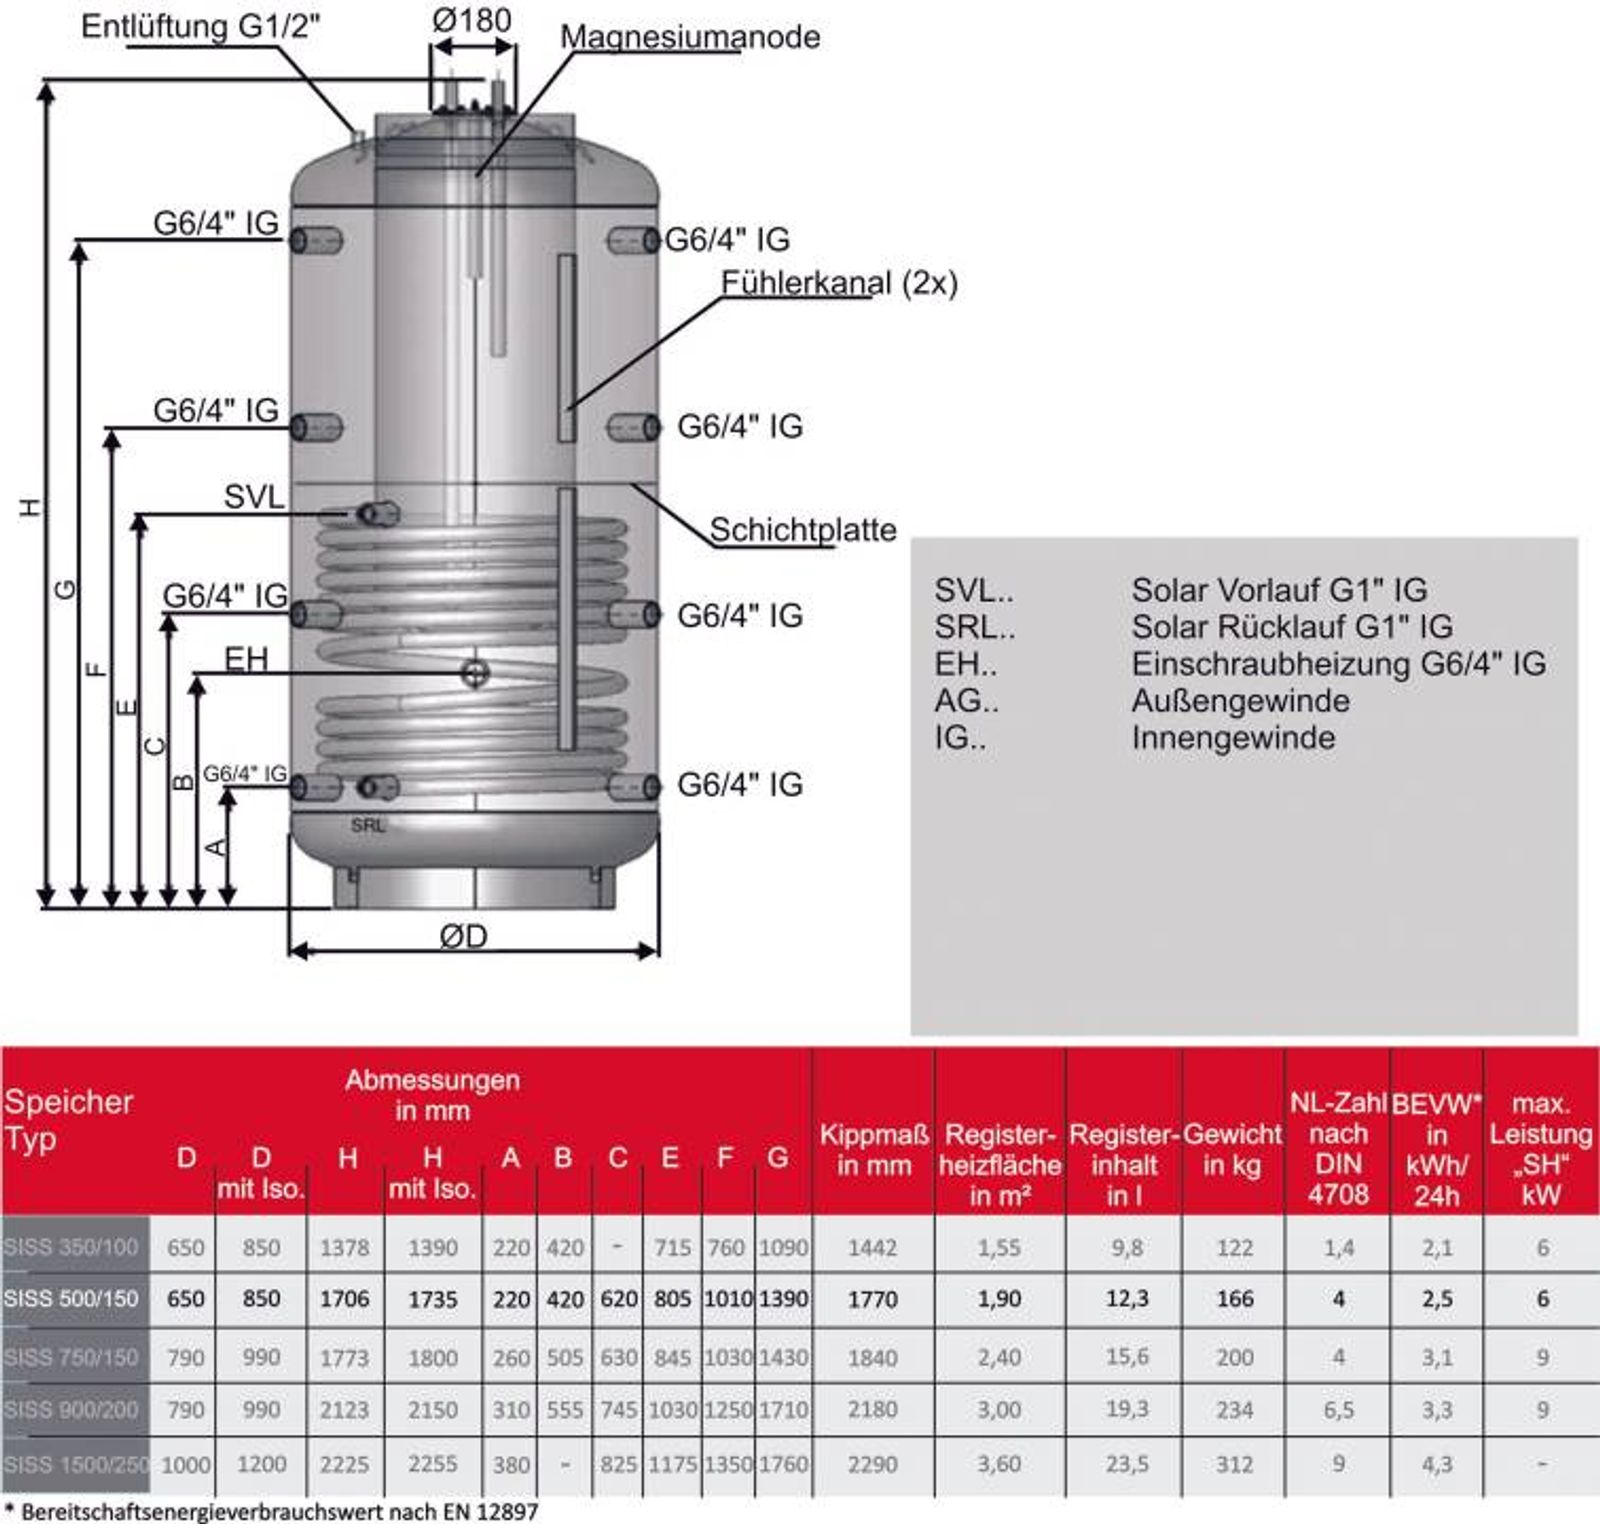 Kombispeicher Speicher im Speicher 500/150 Liter mit 100 mm Isolierung